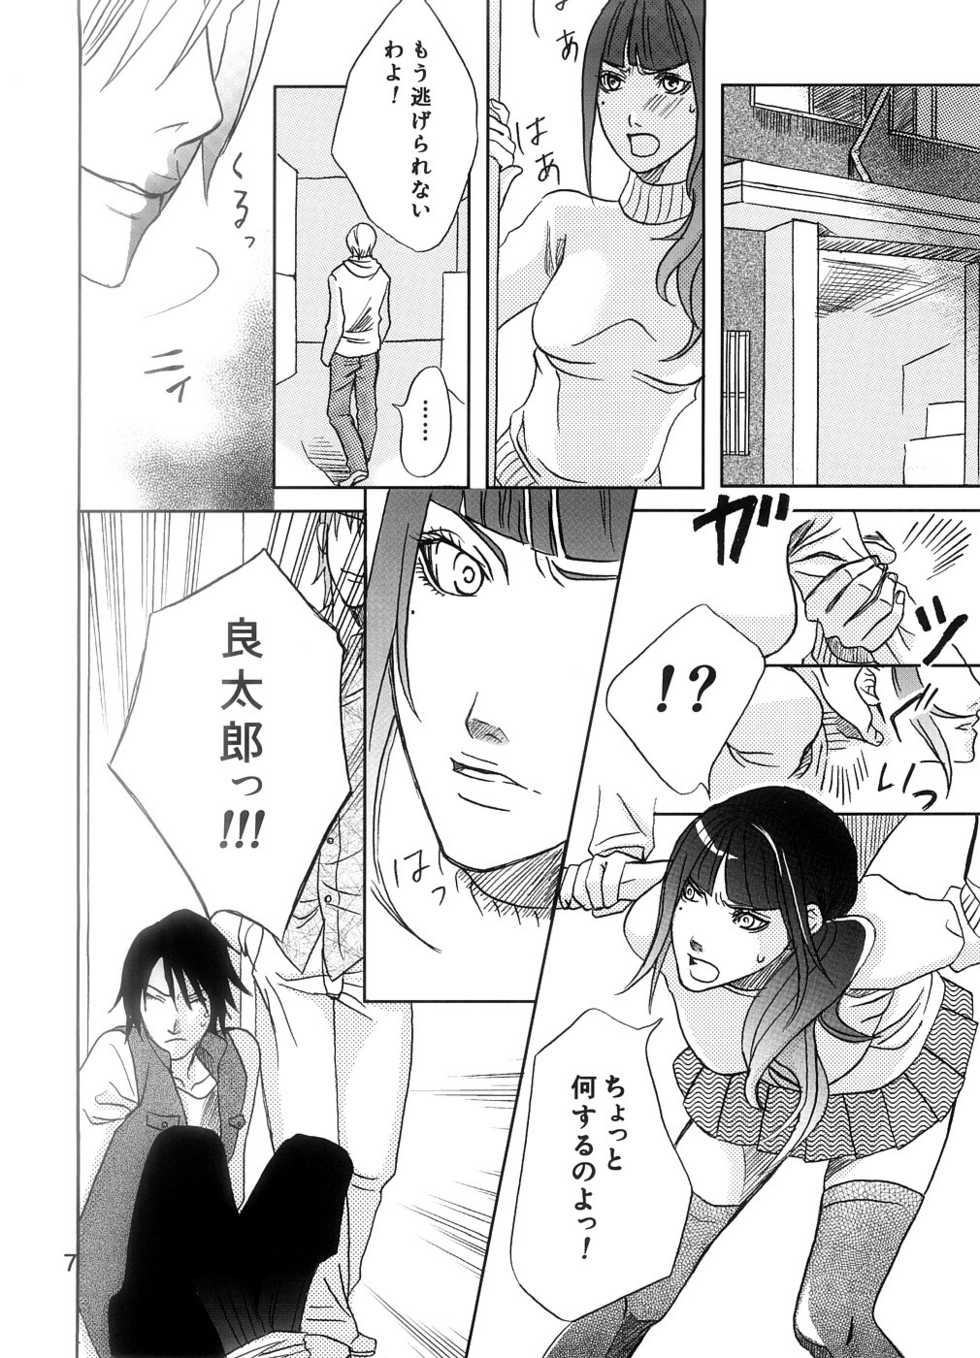 [爆焔犬] Sakukoto no nai hana (Kamen Rider Den-o) - Page 7